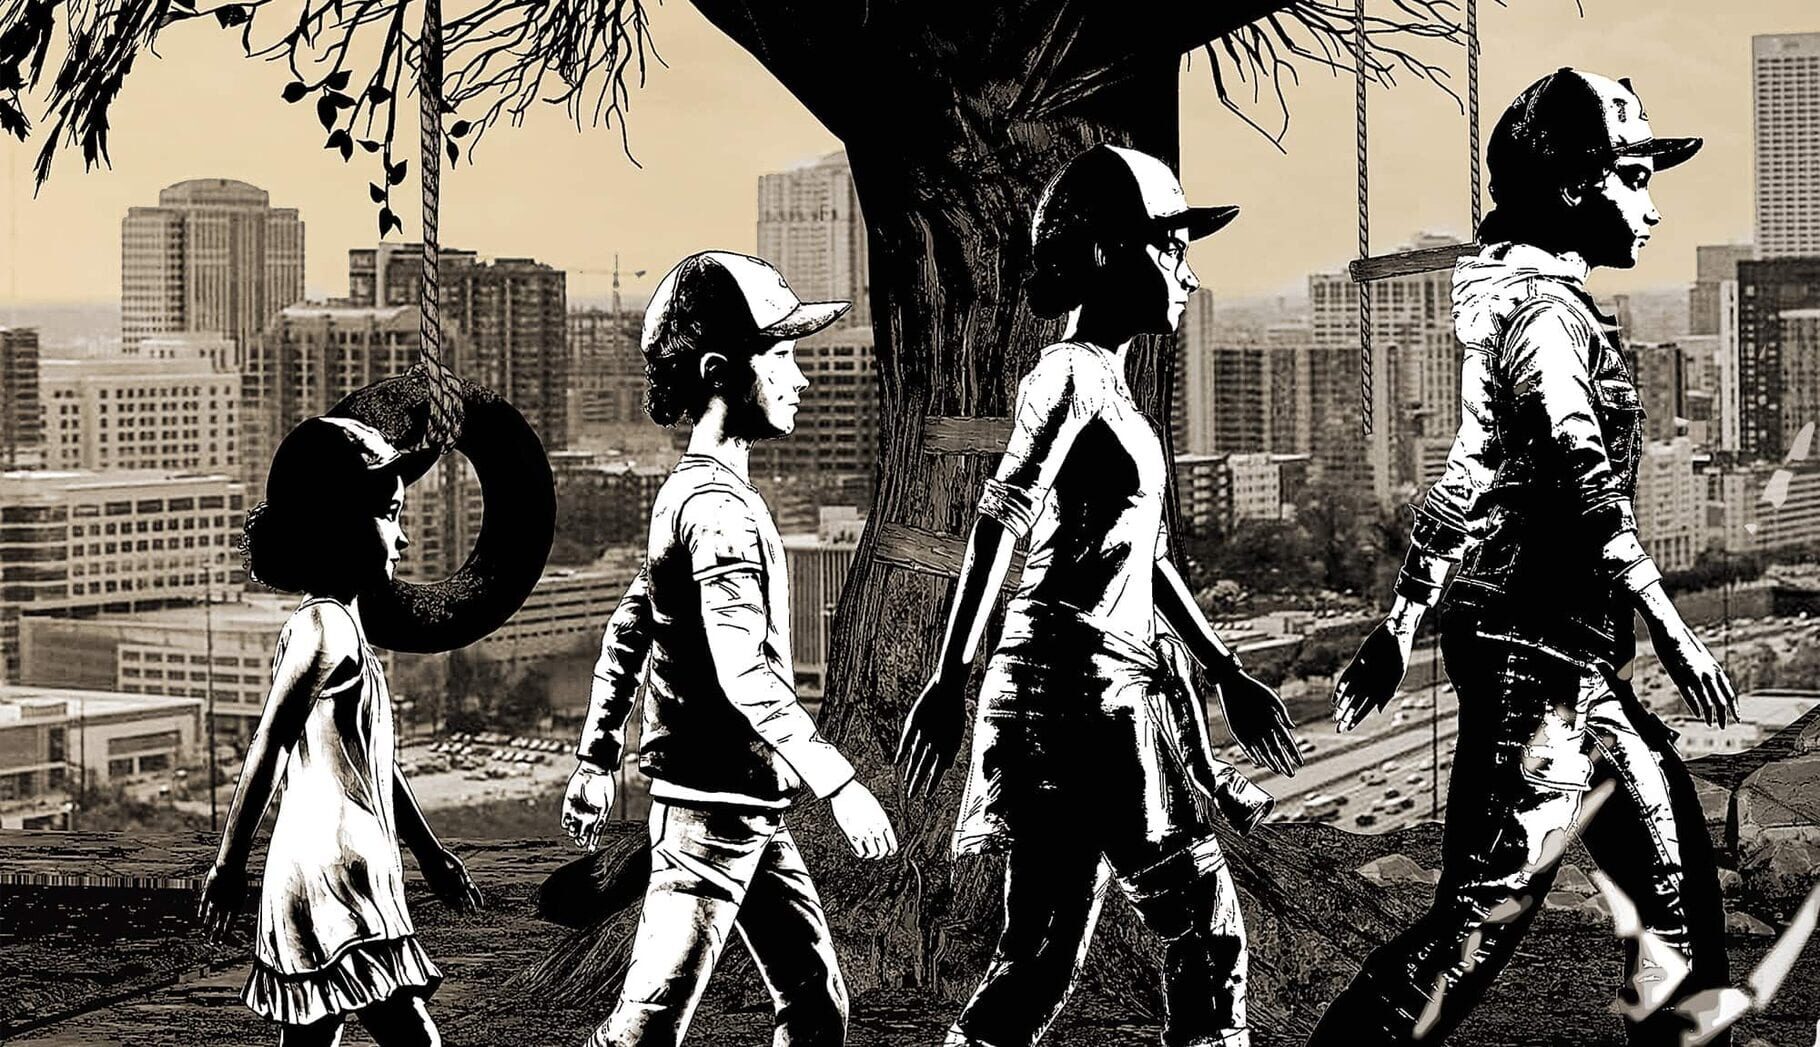 Arte - The Walking Dead: The Telltale Definitive Series